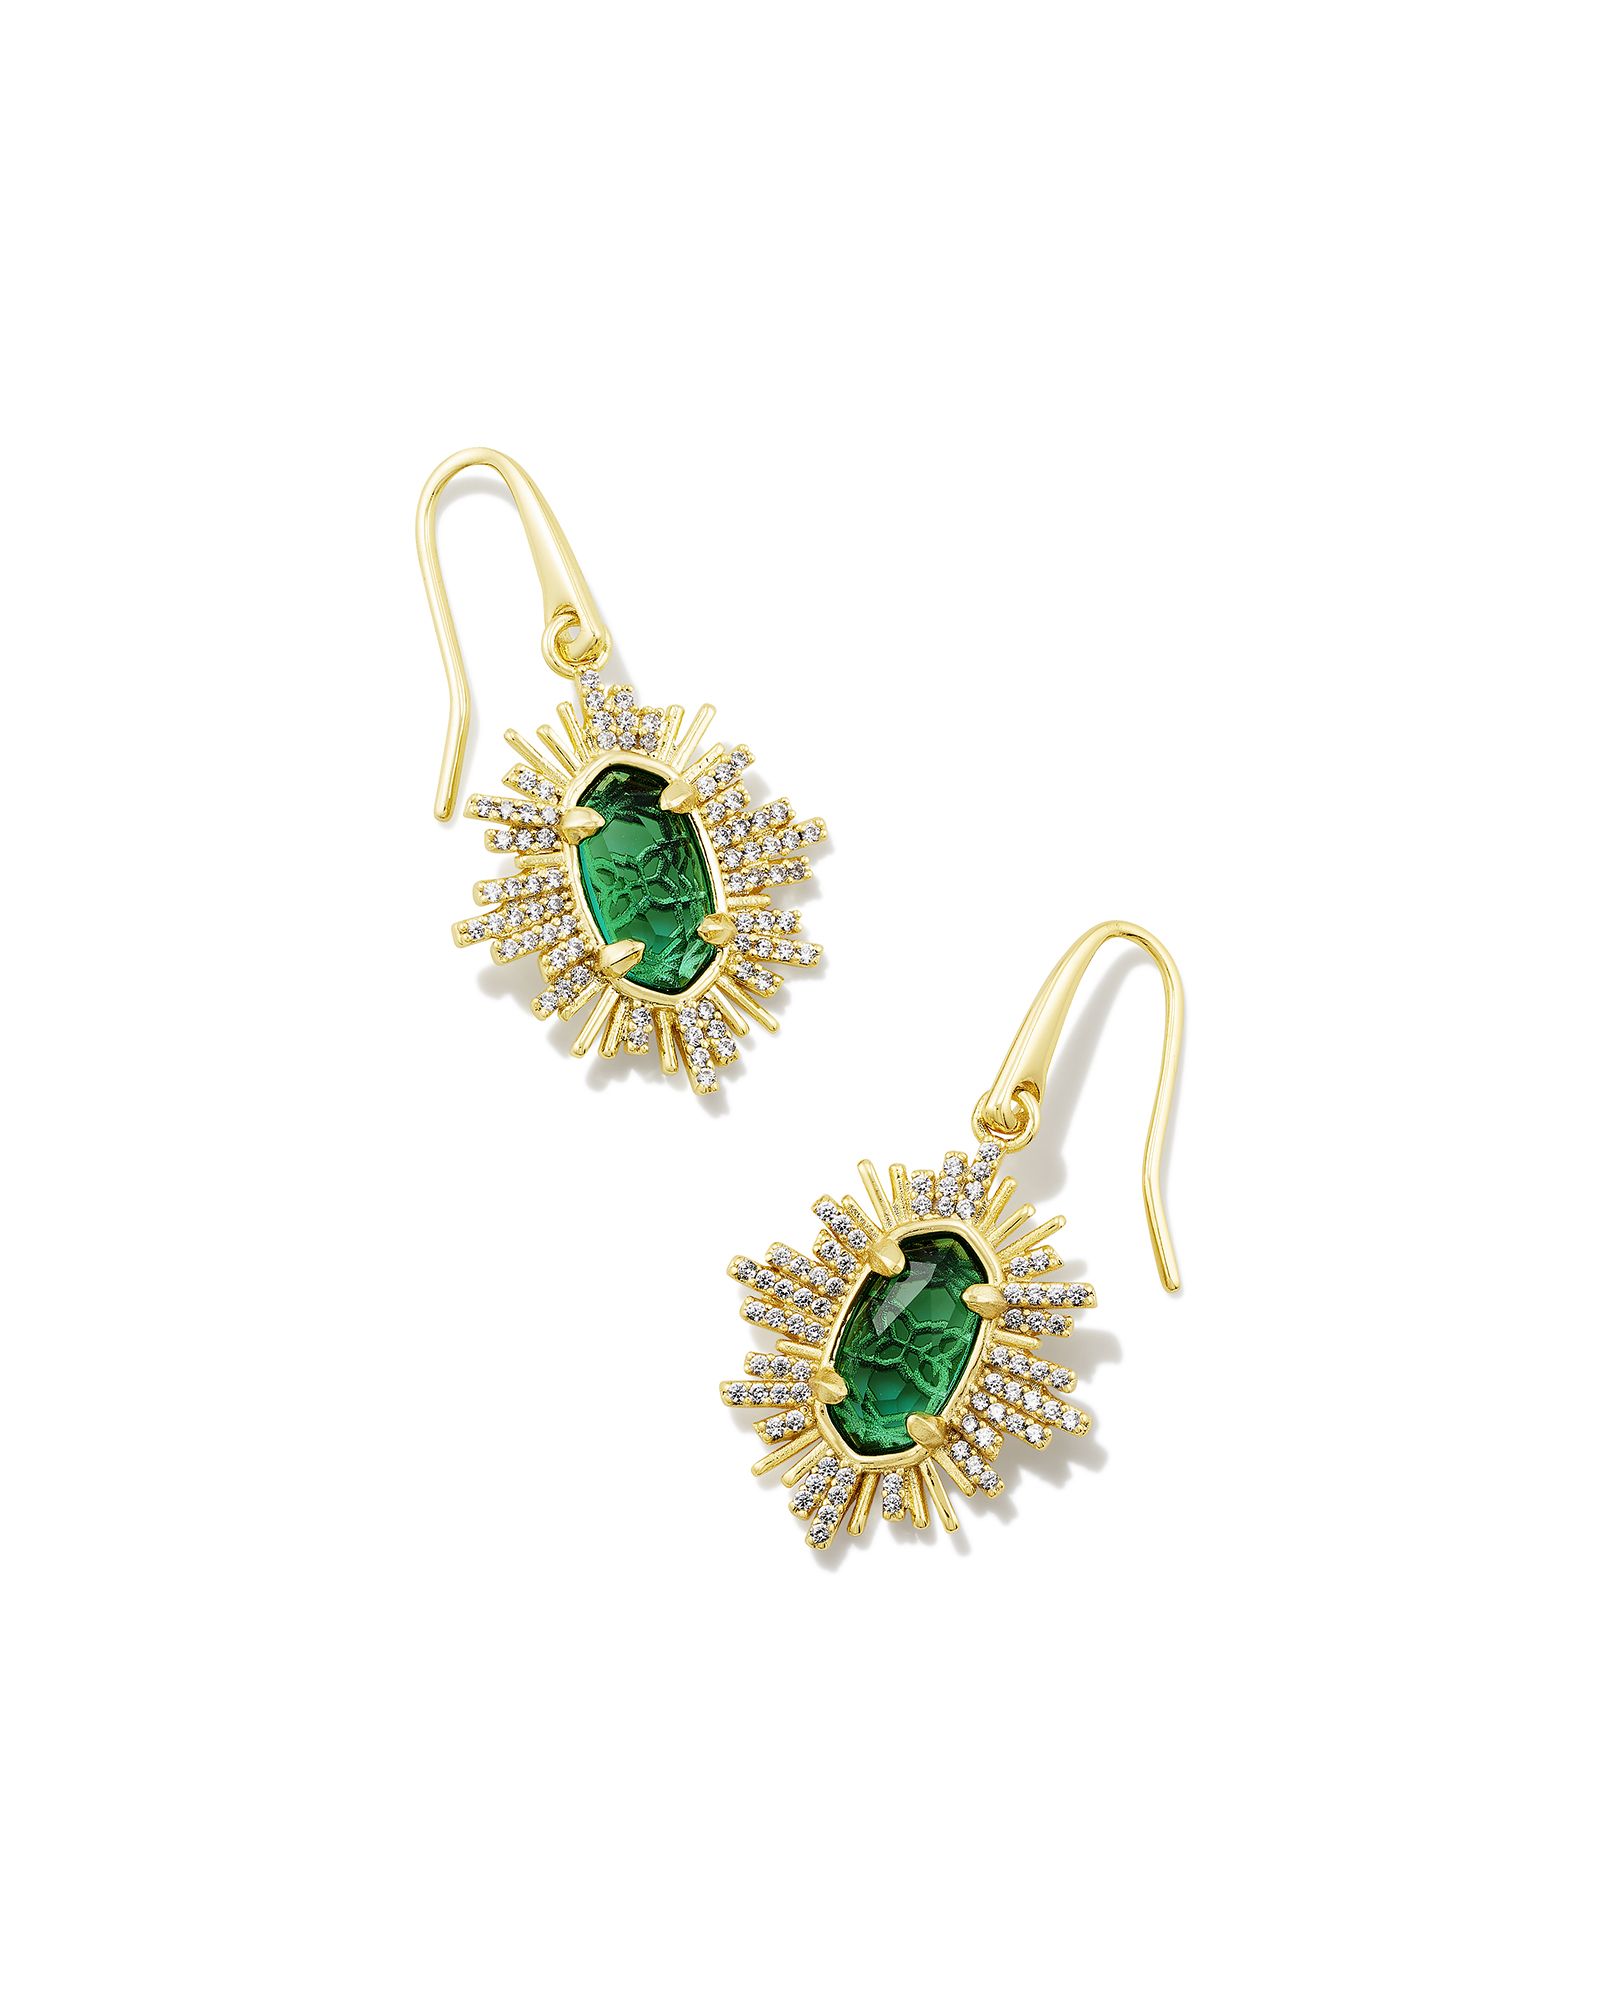 Grayson Gold Sunburst Drop Earrings in Green Glass | Kendra Scott | Kendra Scott